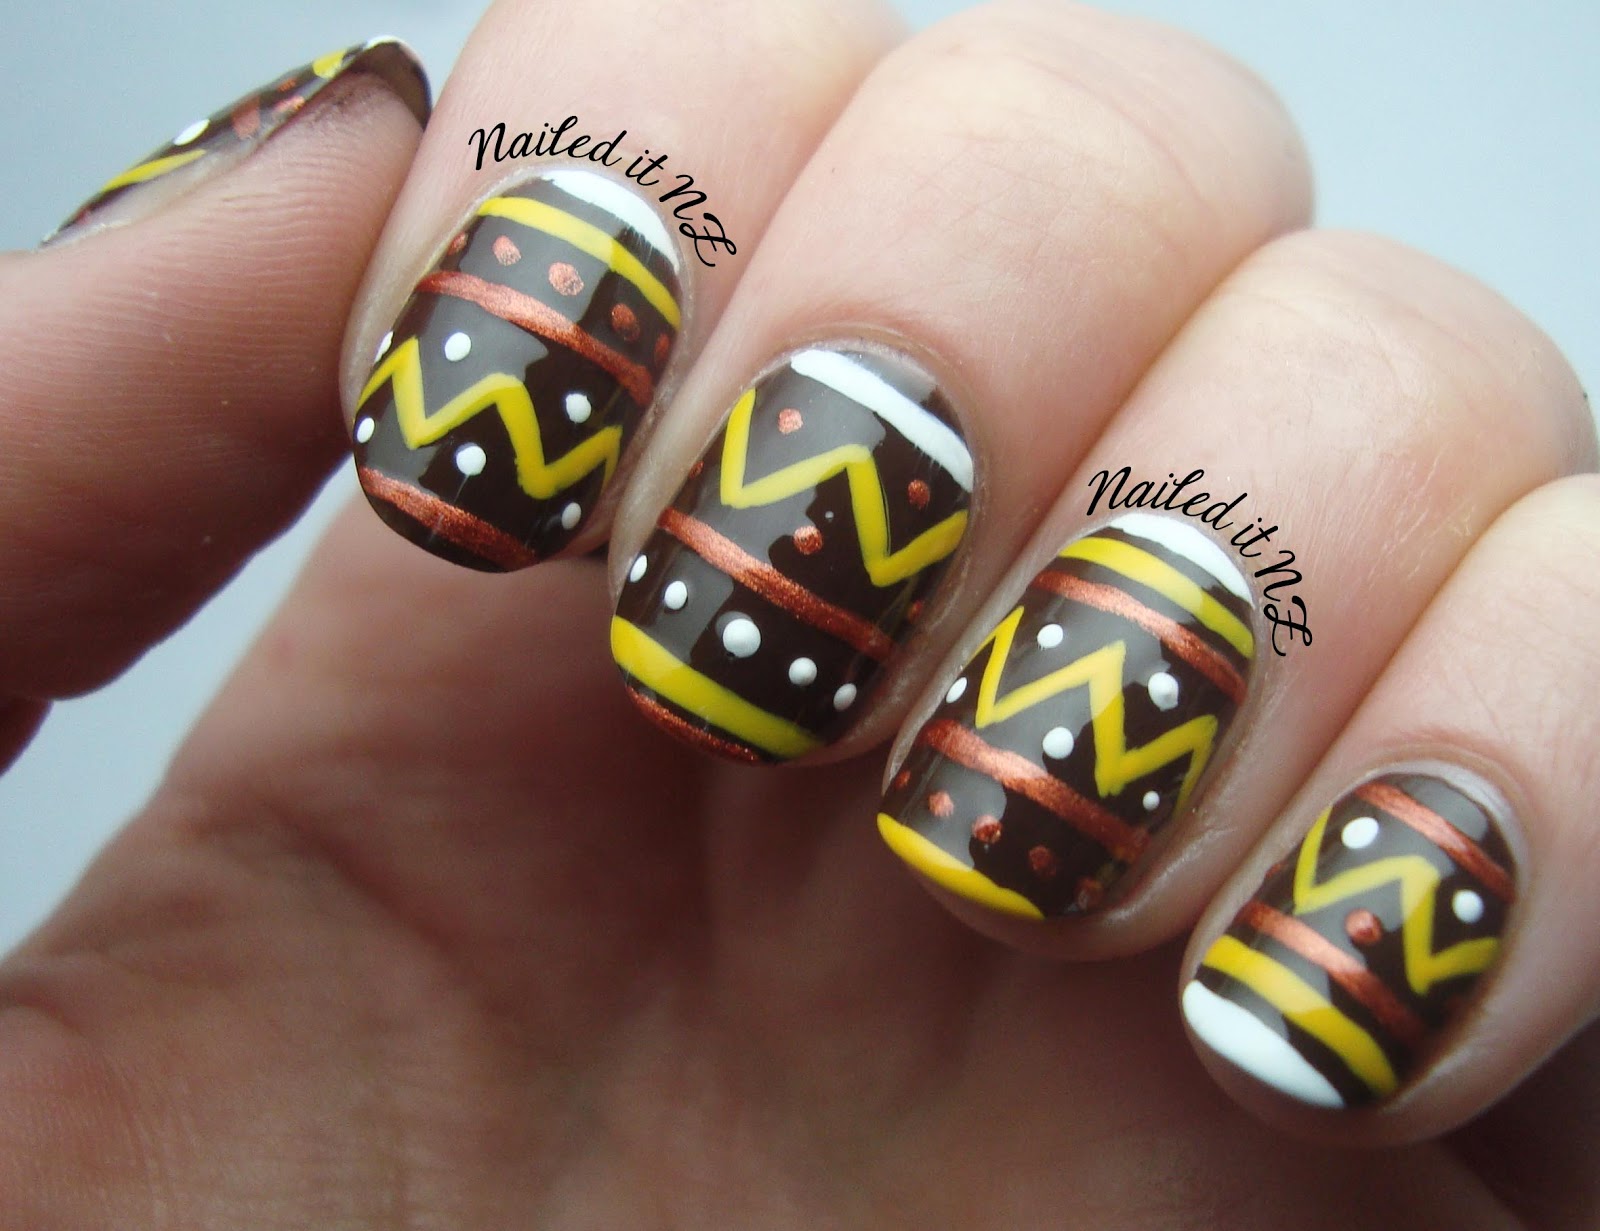 Nail art for short nails #7 - Tribal nails